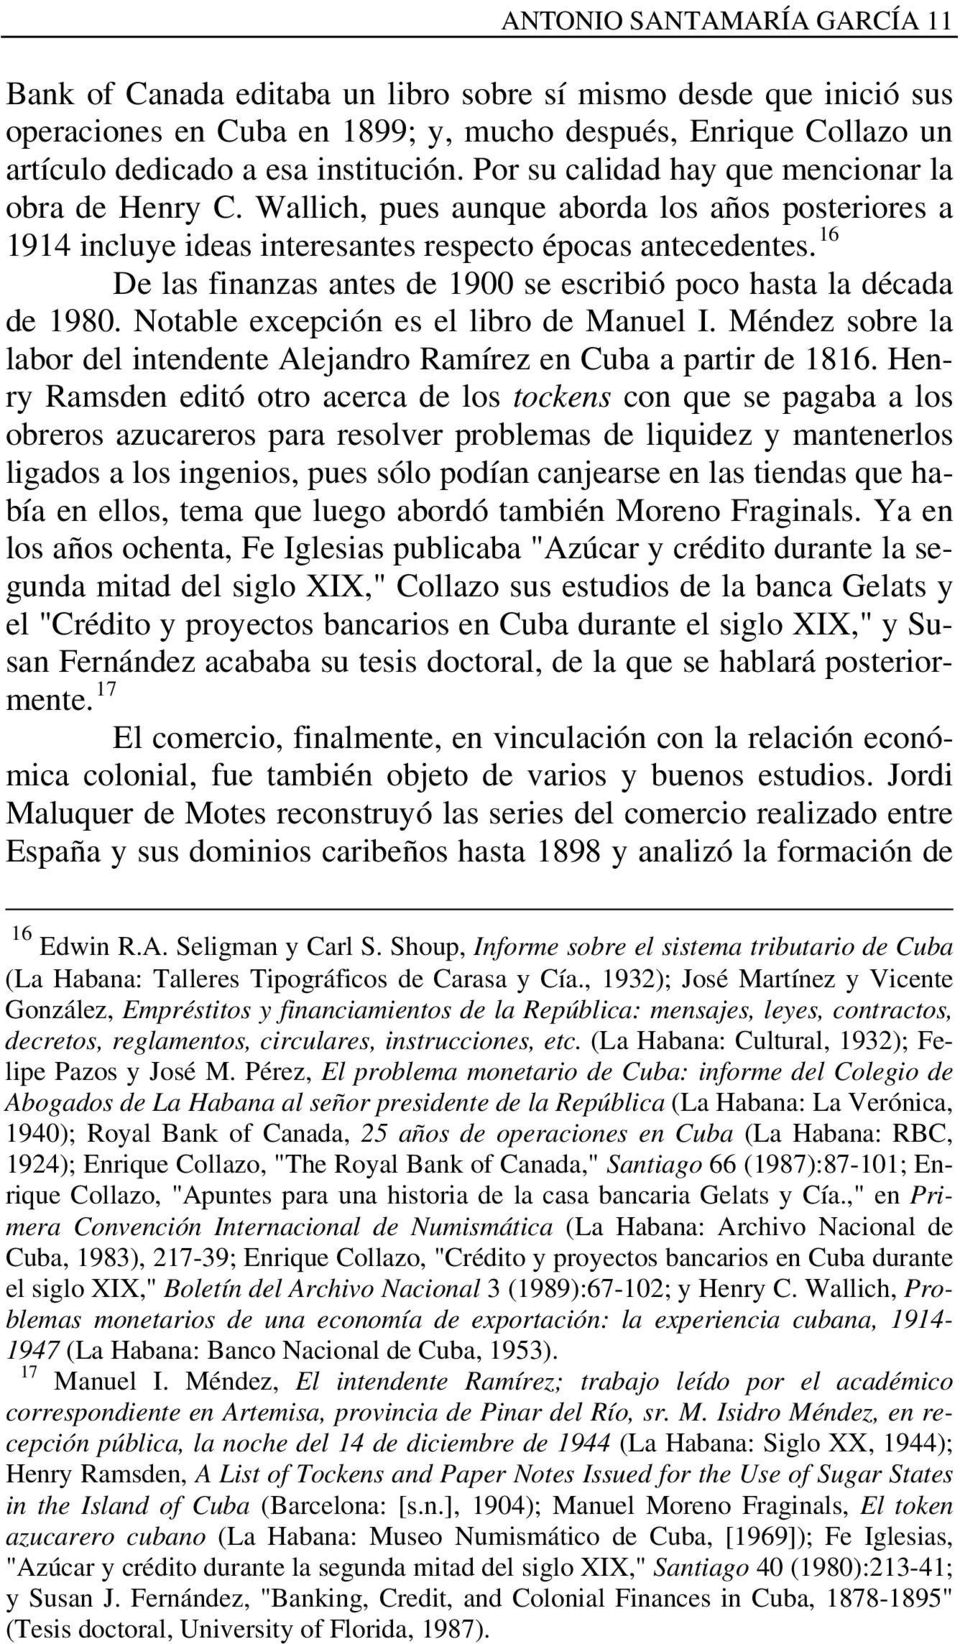 16 De las finanzas antes de 1900 se escribió poco hasta la década de 1980. Notable excepción es el libro de Manuel I. Méndez sobre la labor del intendente Alejandro Ramírez en Cuba a partir de 1816.